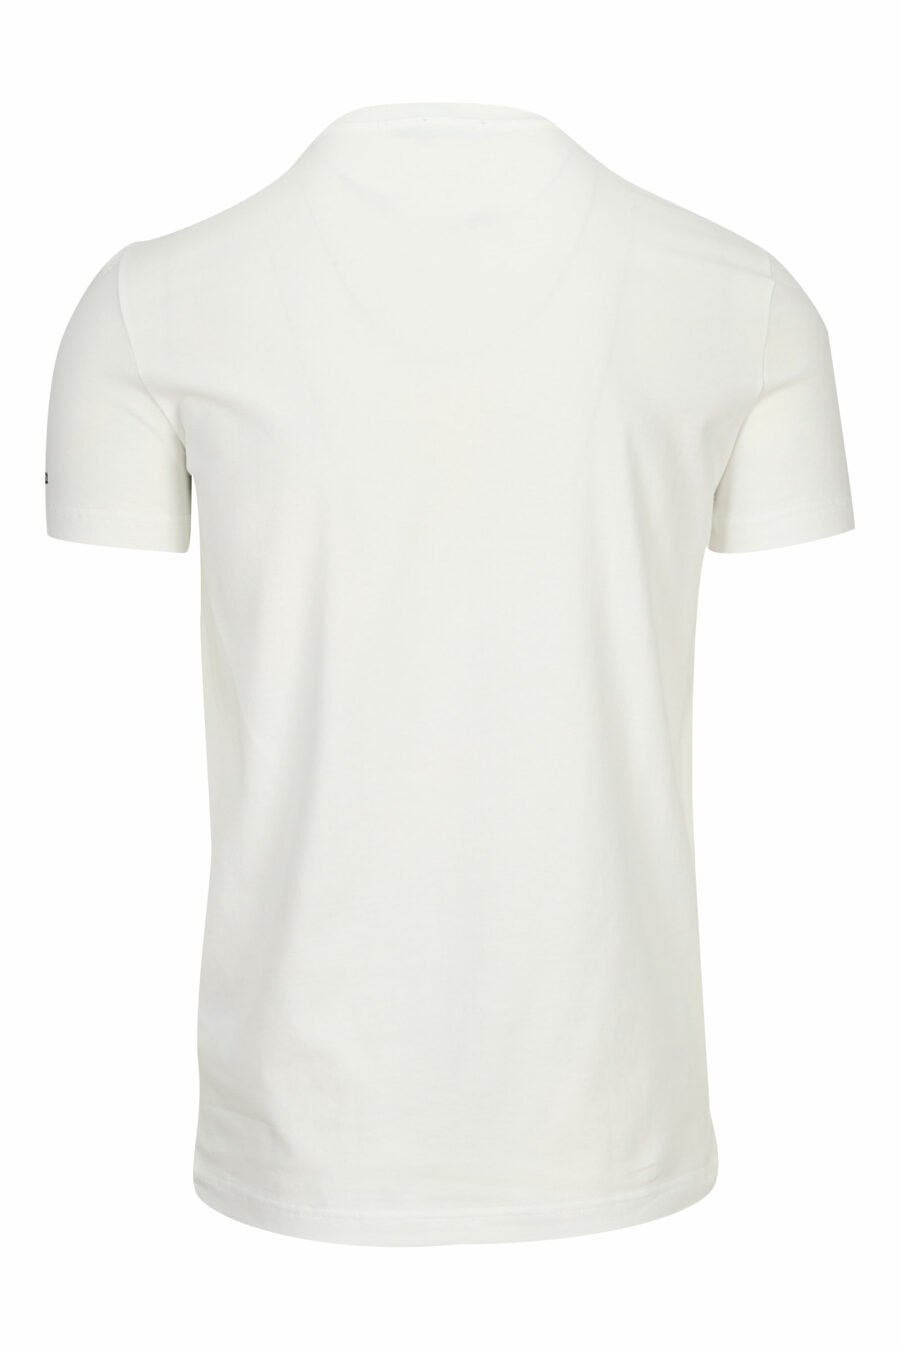 Weißes T-Shirt mit Minilogue-"Unterwäsche" - 8032674811561 1